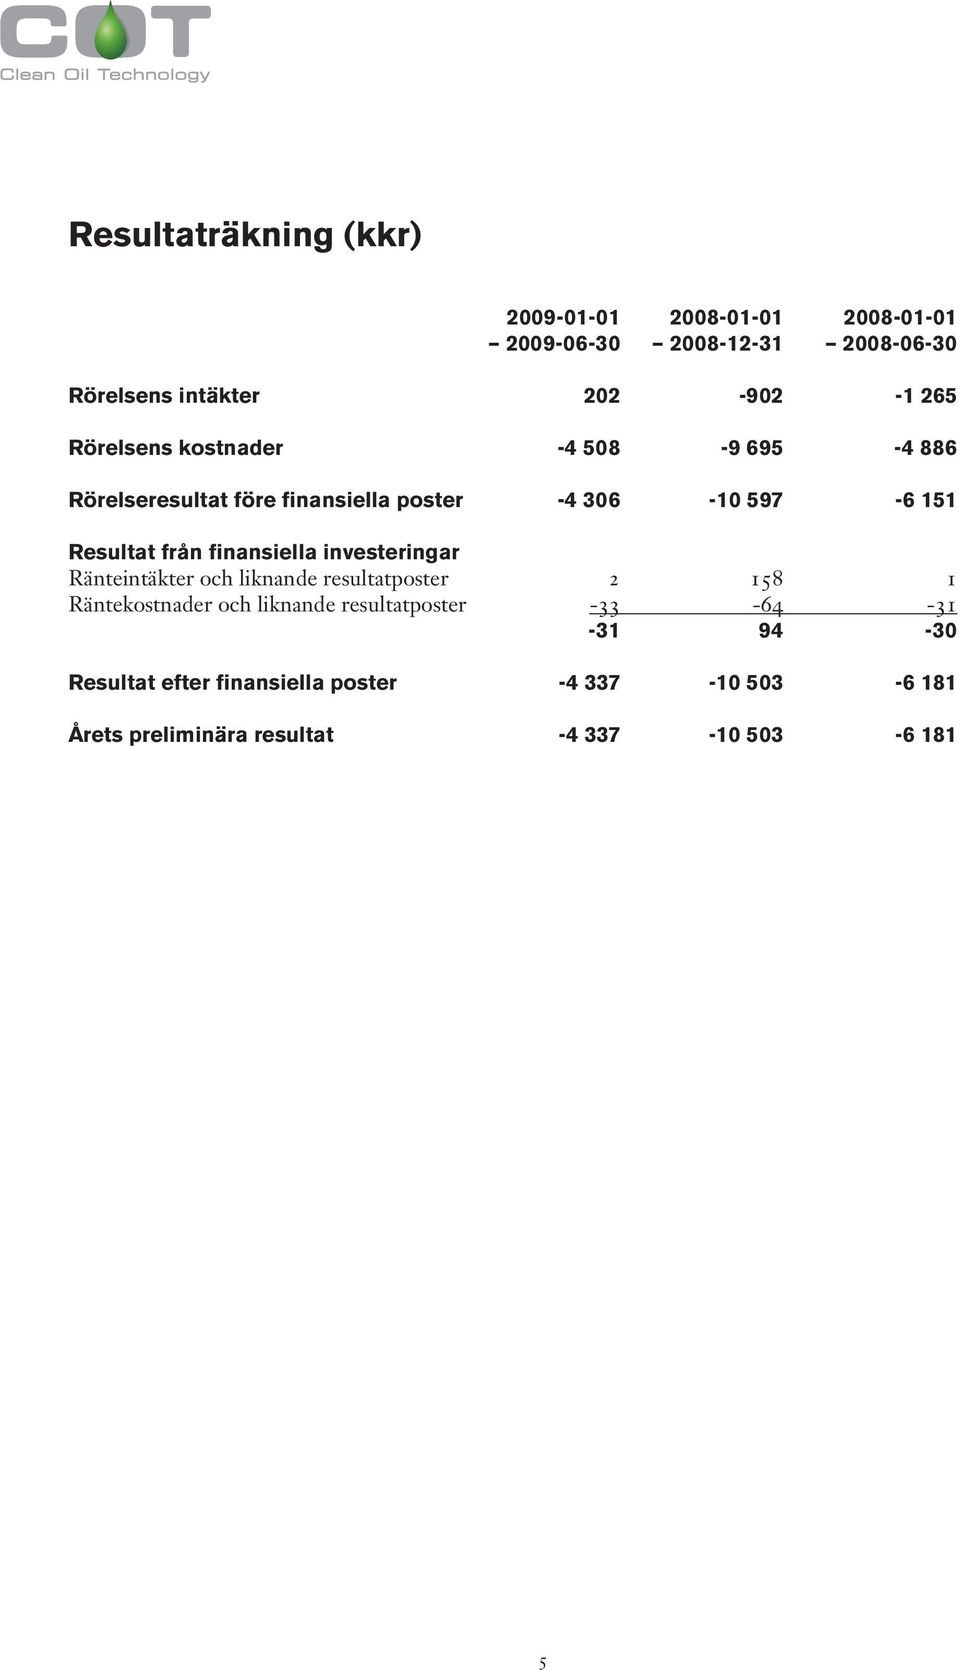 finansiella investeringar Ränteintäkter och liknande resultatposter 2 158 1 Räntekostnader och liknande resultatposter